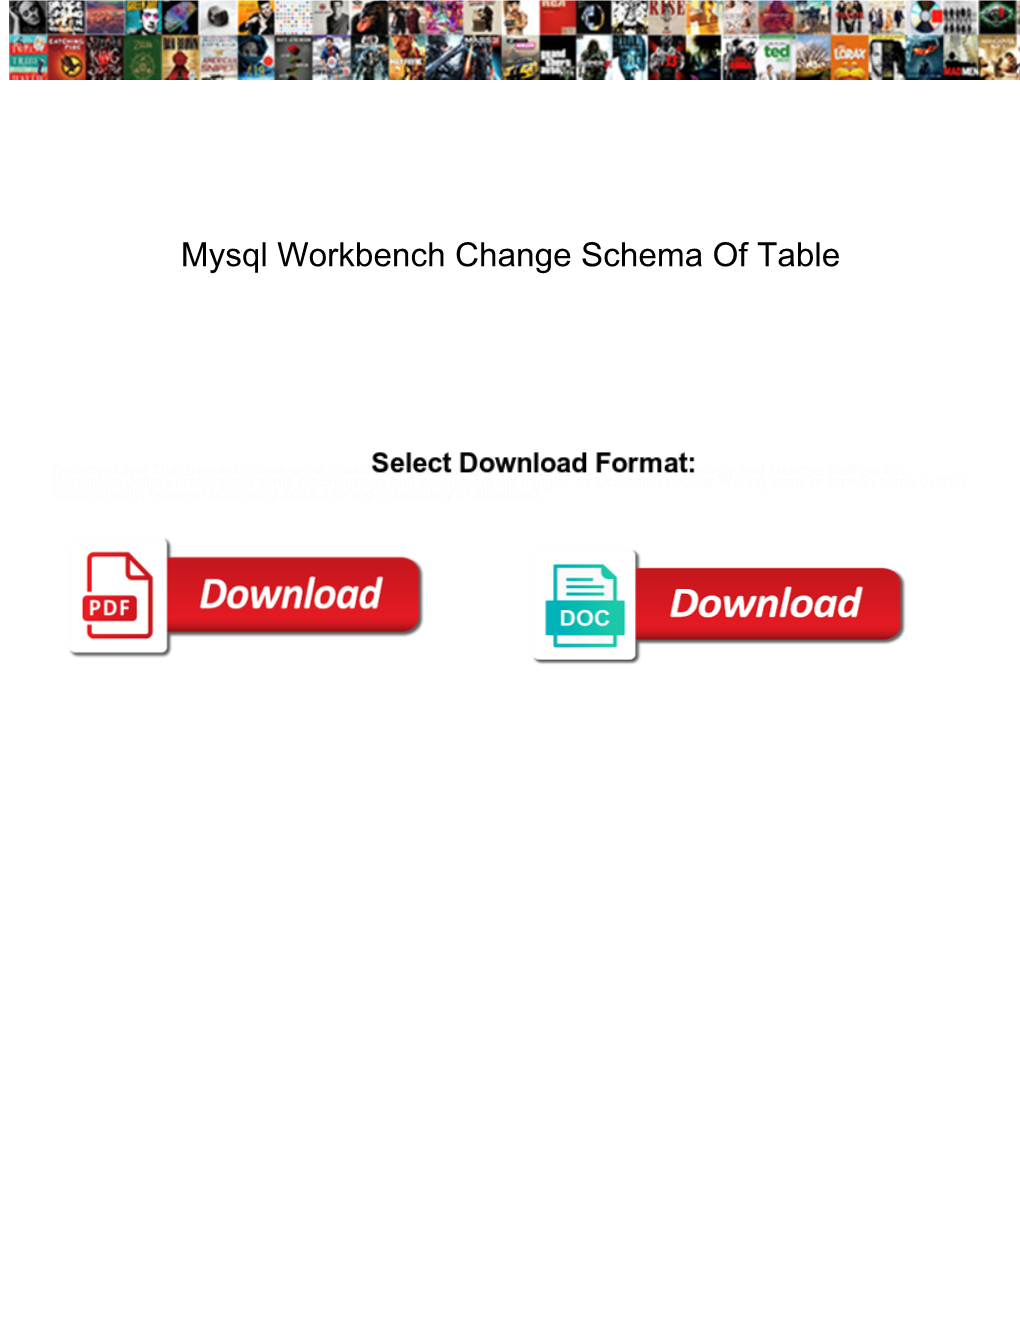 Mysql Workbench Change Schema of Table